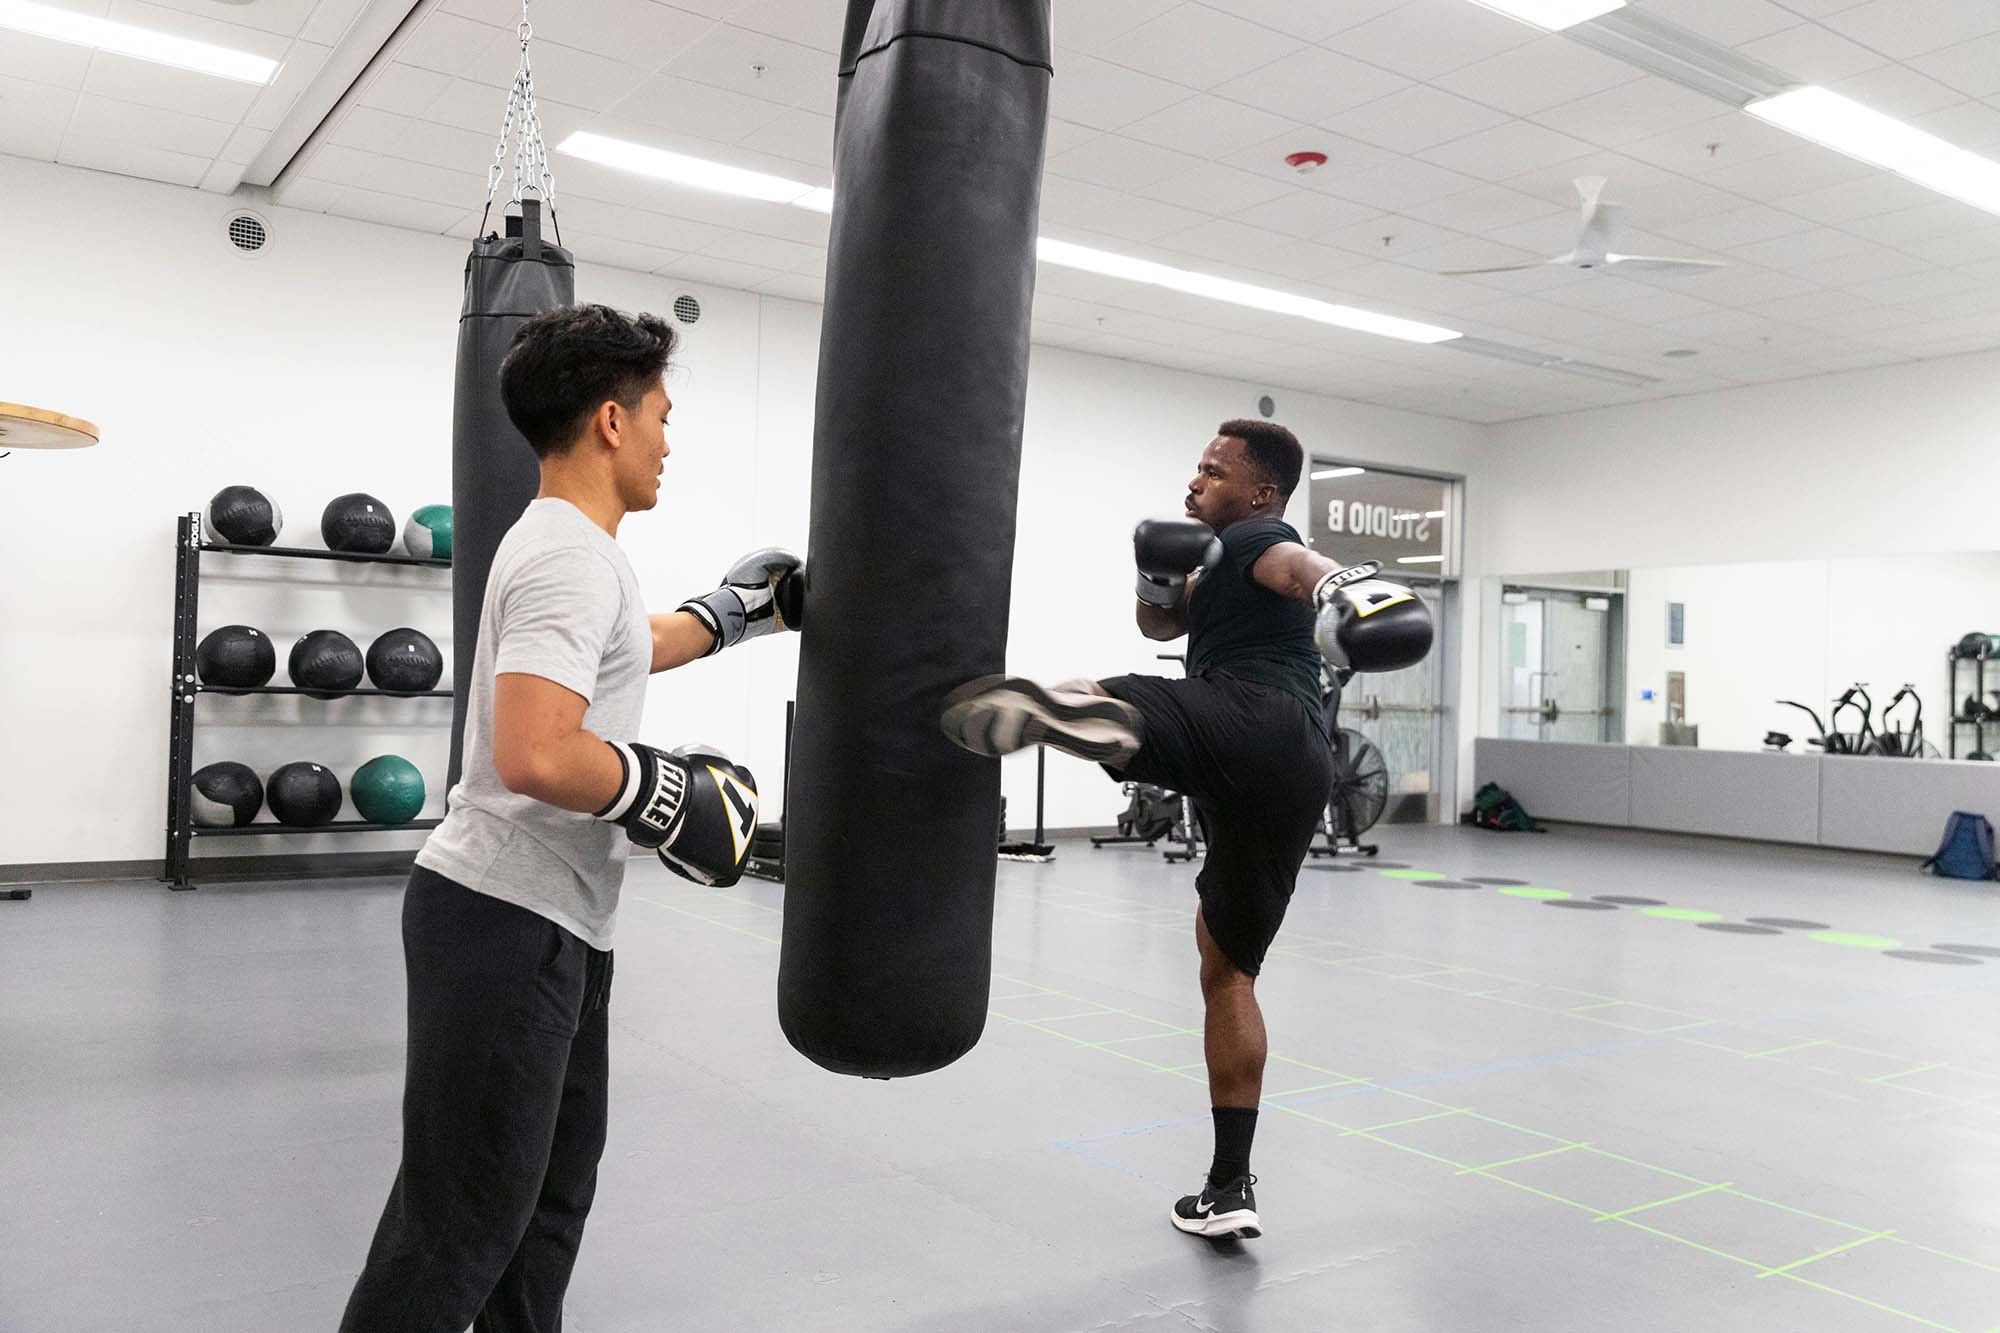 two students practicing at a kick-boxing bag